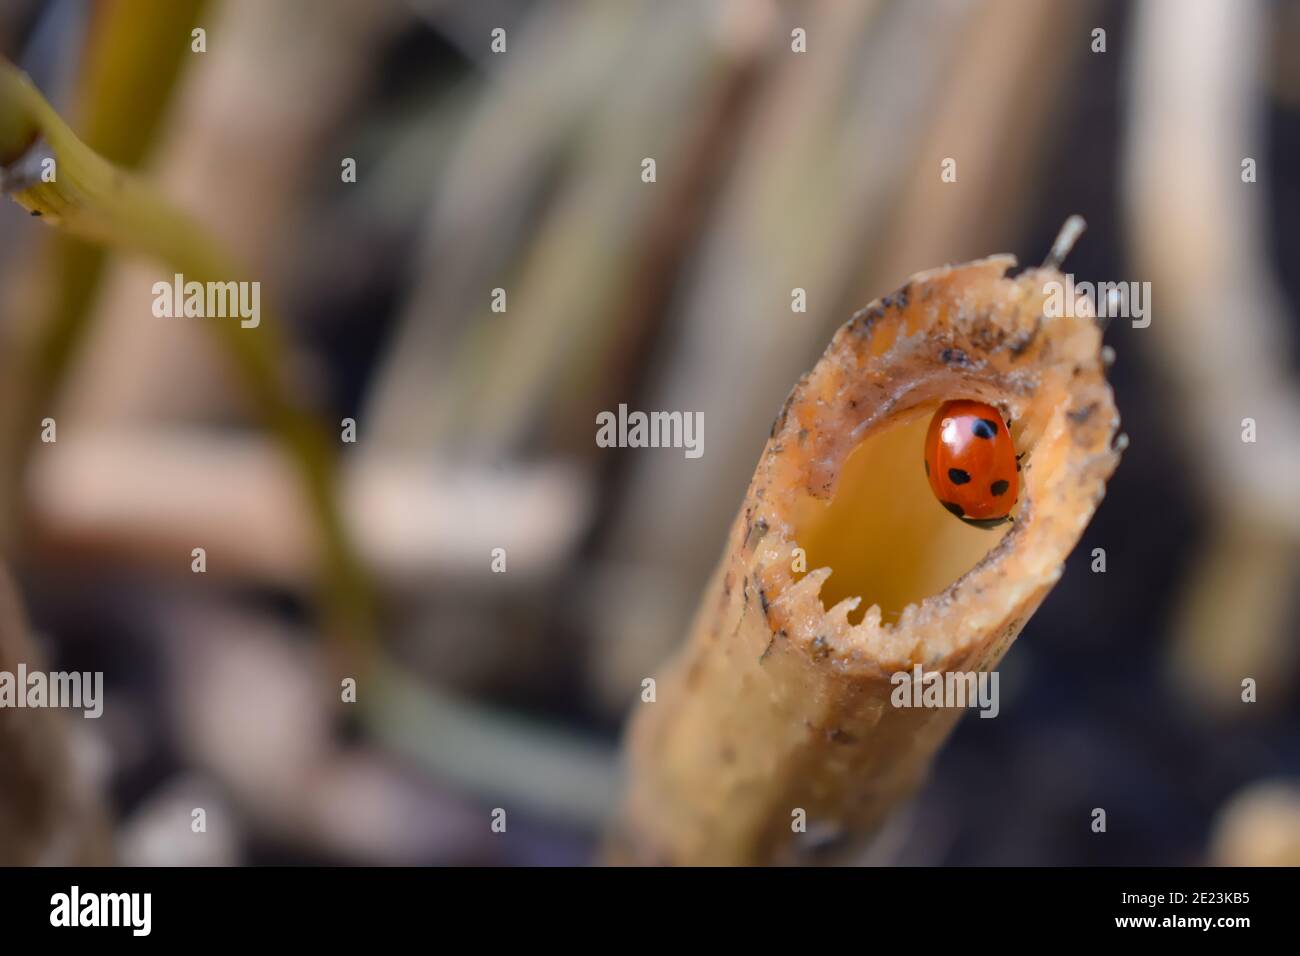 Siebenfleckiger Marienkäfer hat schwarzen Kopf und Thorax zwei weiße Flecken Jede kurze Antenne hat sechs Beine und rote Flügeldecken mit Ebenholz Runde Punkte Es ist ein häufiges Insekt Stockfoto